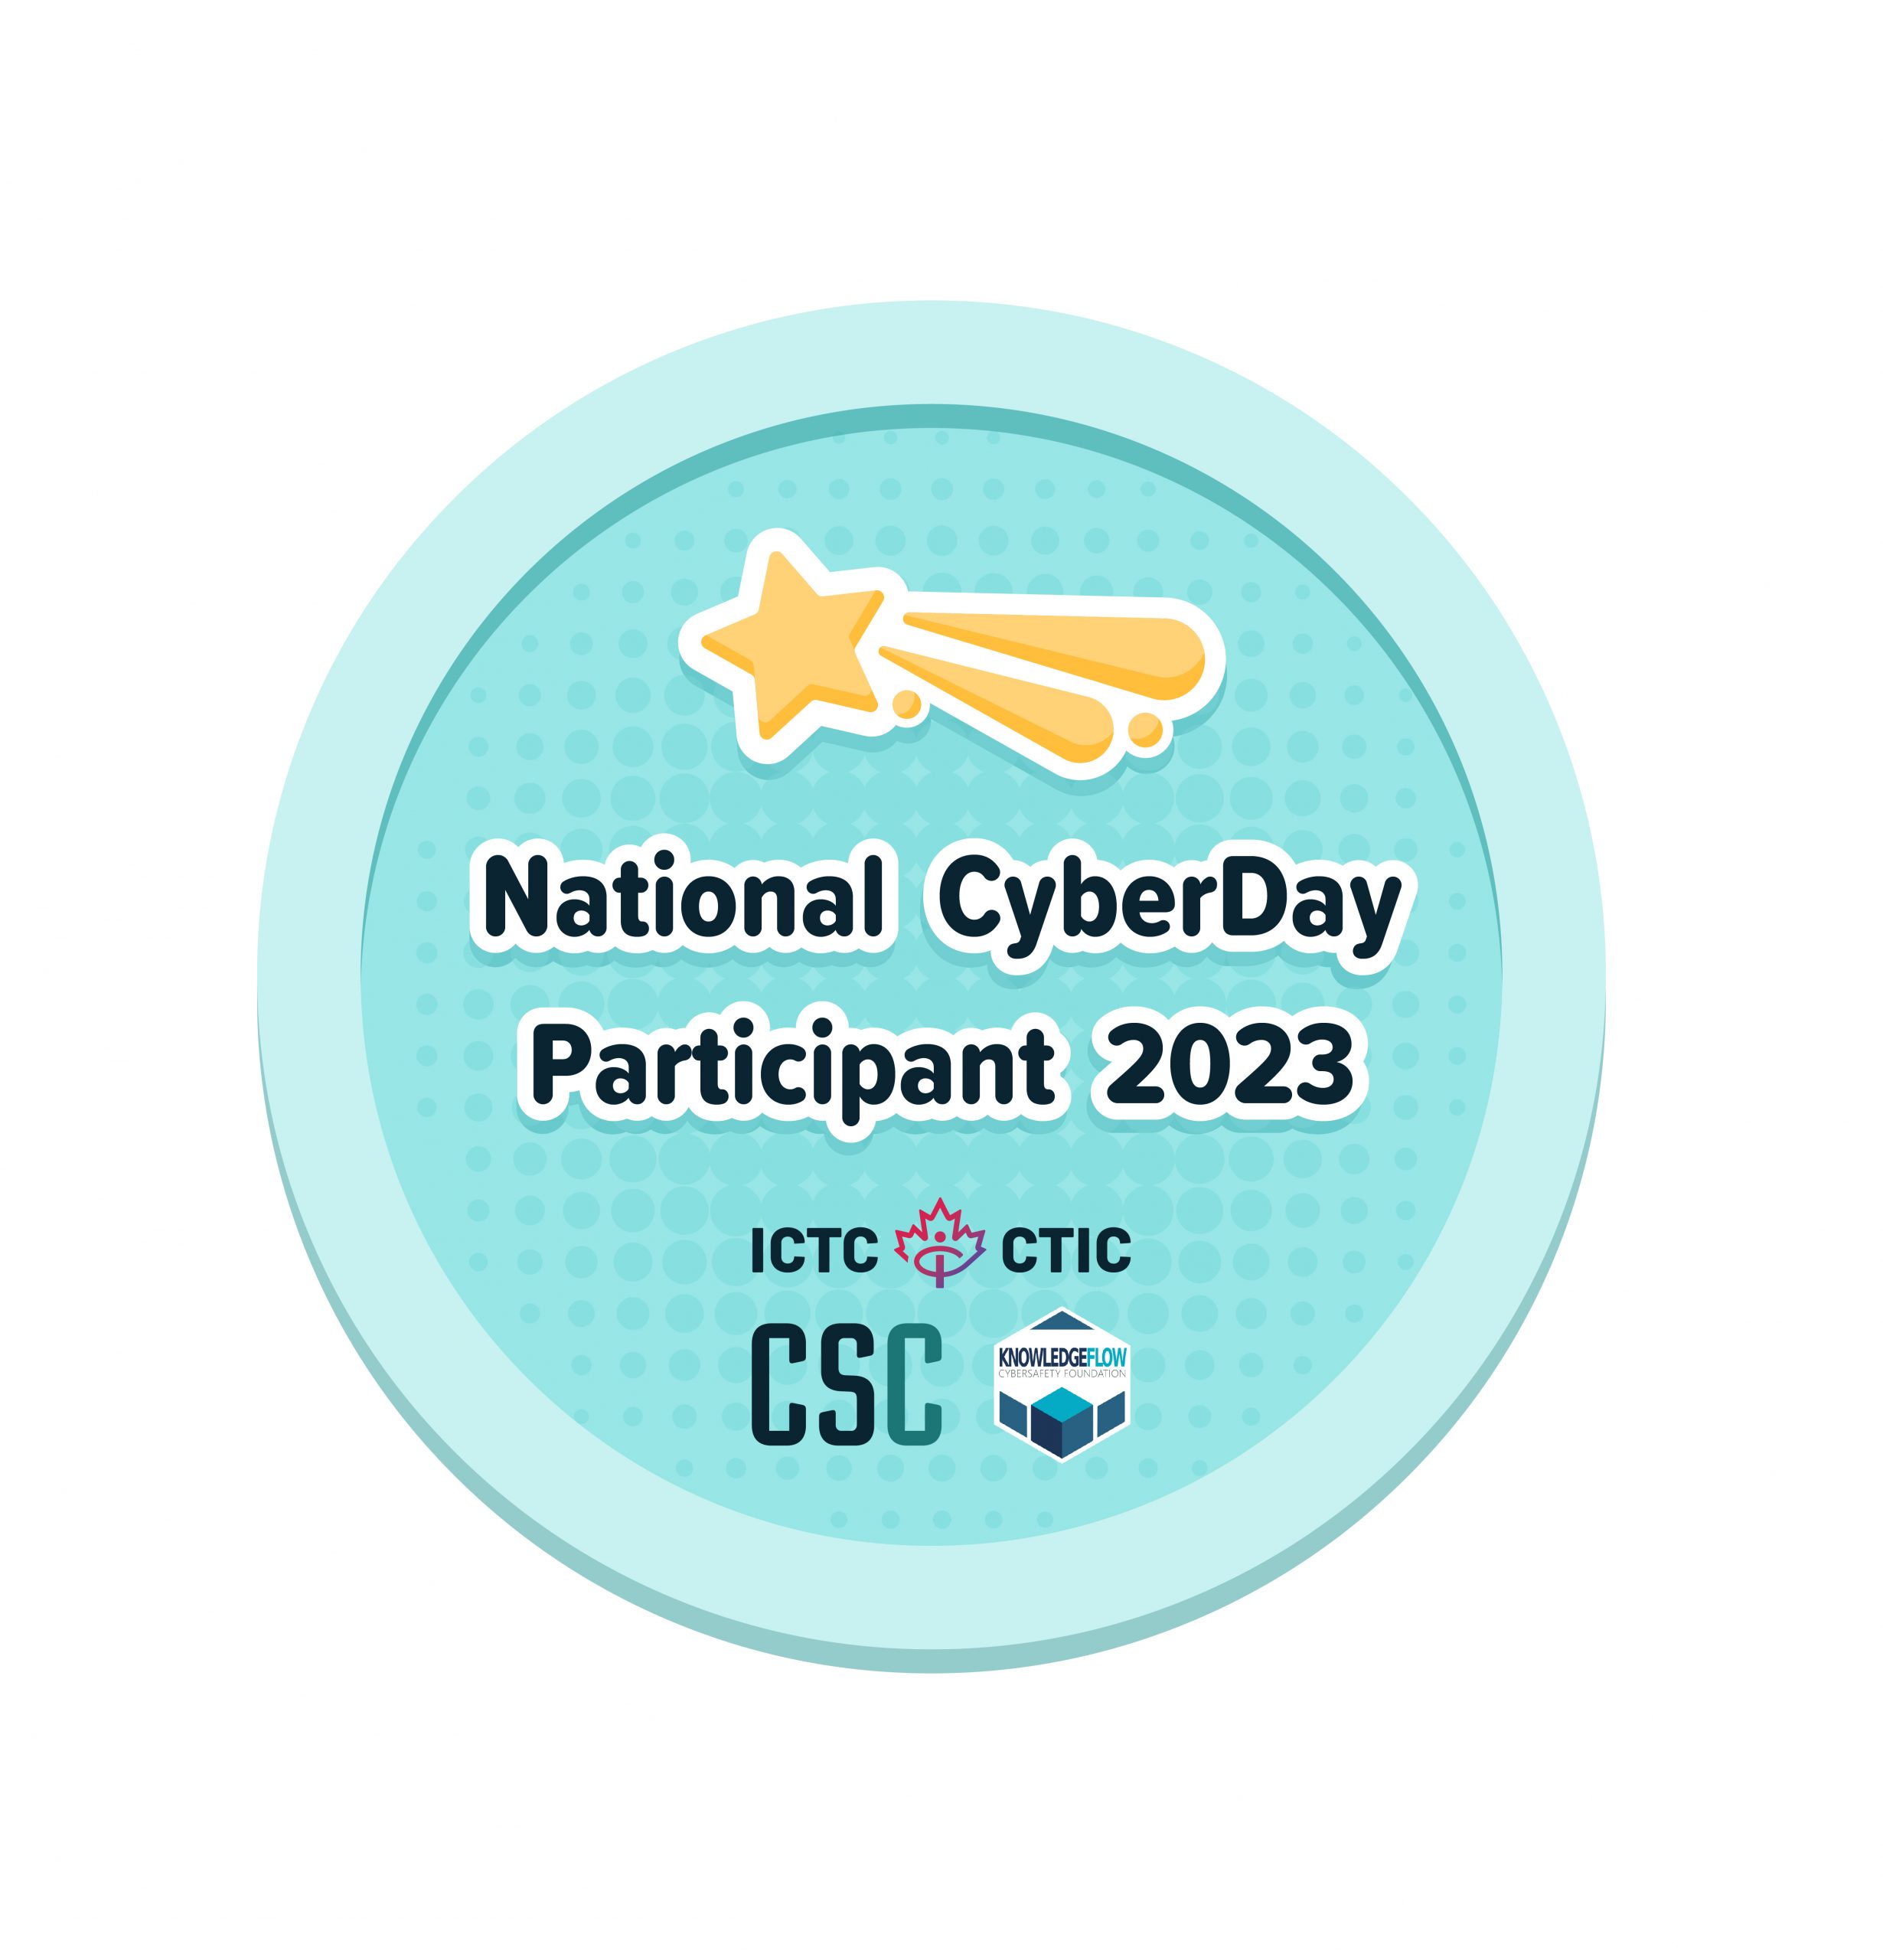 Le badge CSC CyberDayBadge à l'échelle